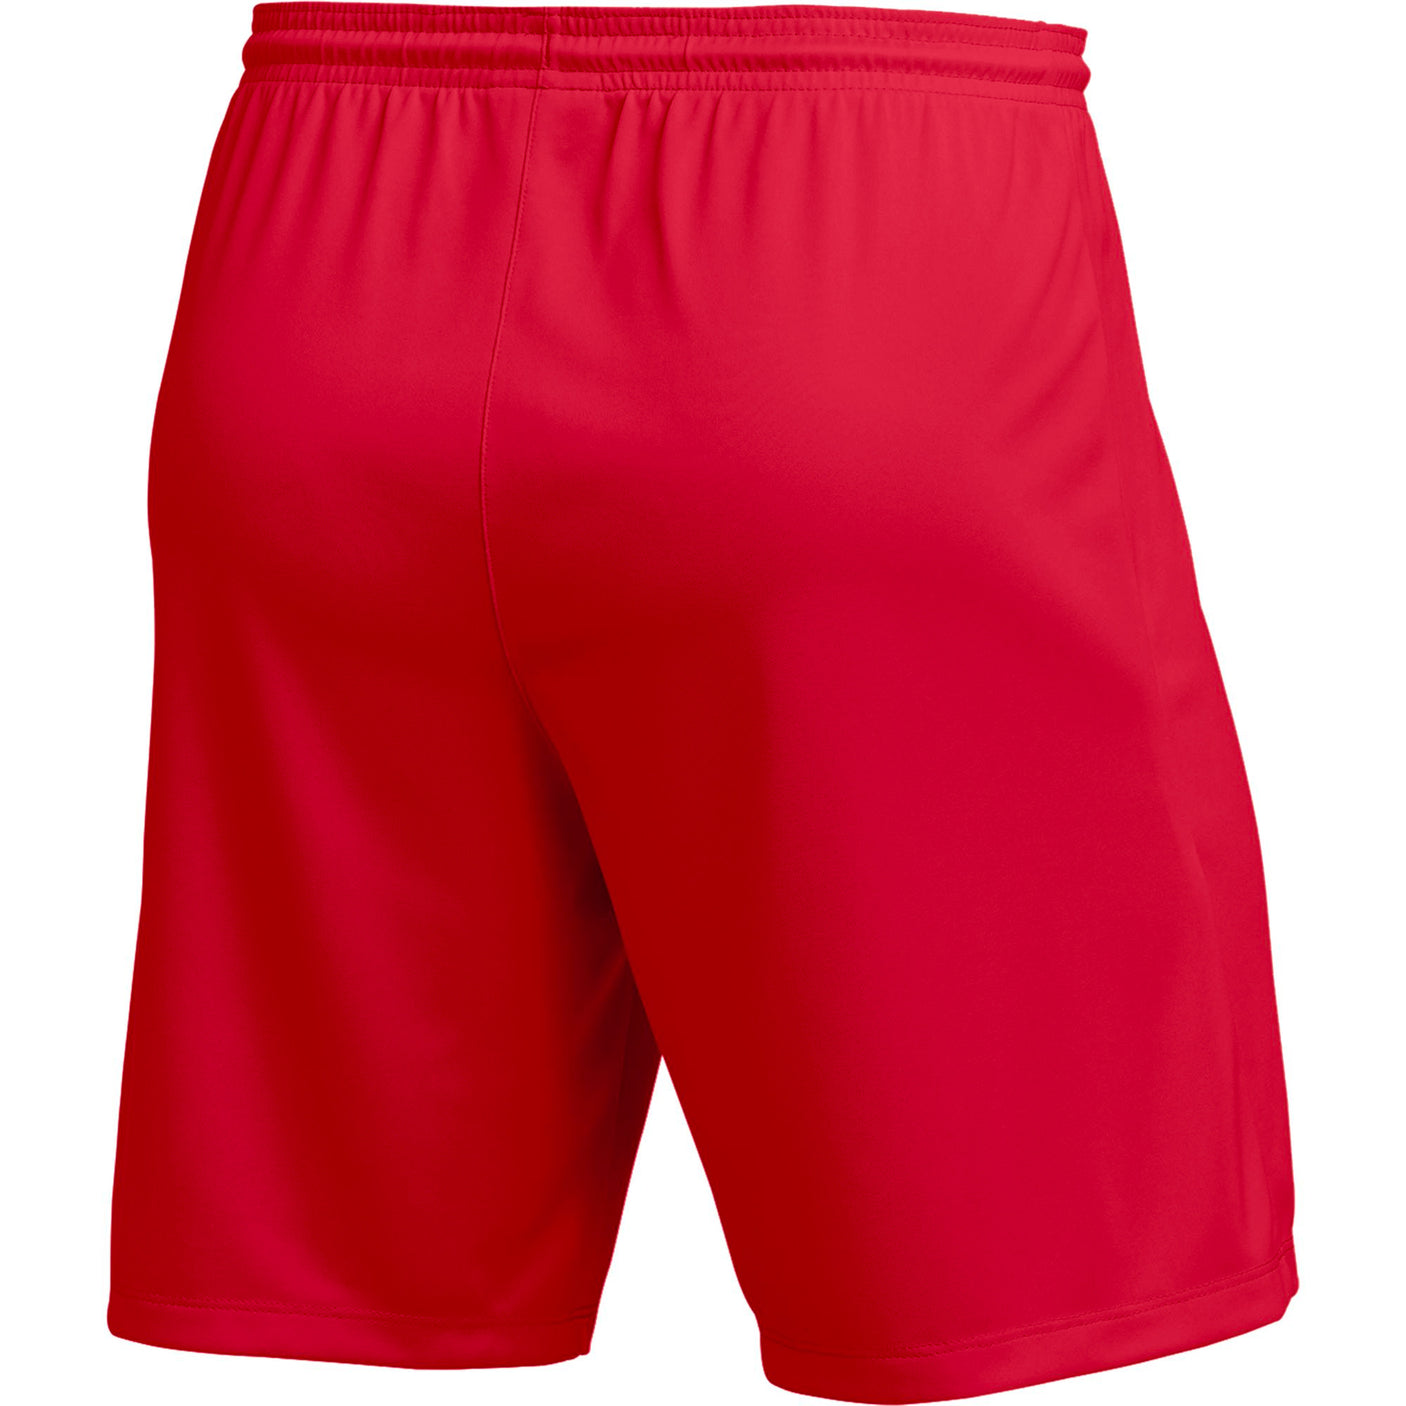 Nike Men's Park III Shorts Red/White Back